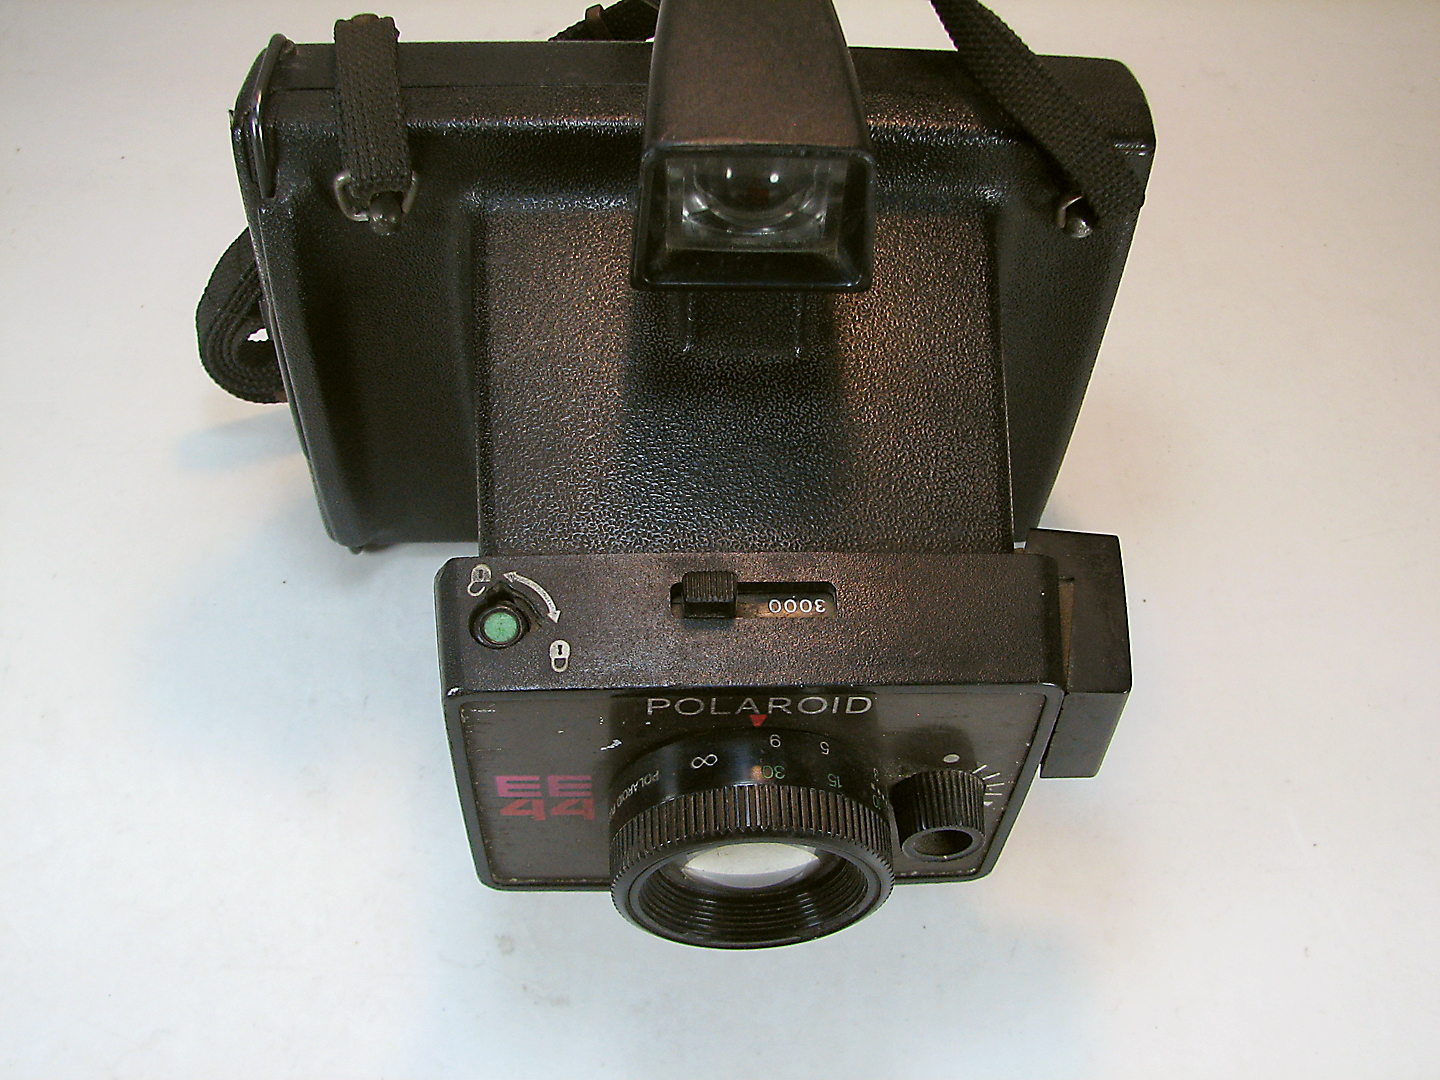 دوربین کلکسیونی چاپ فوری POLAROID EE44 